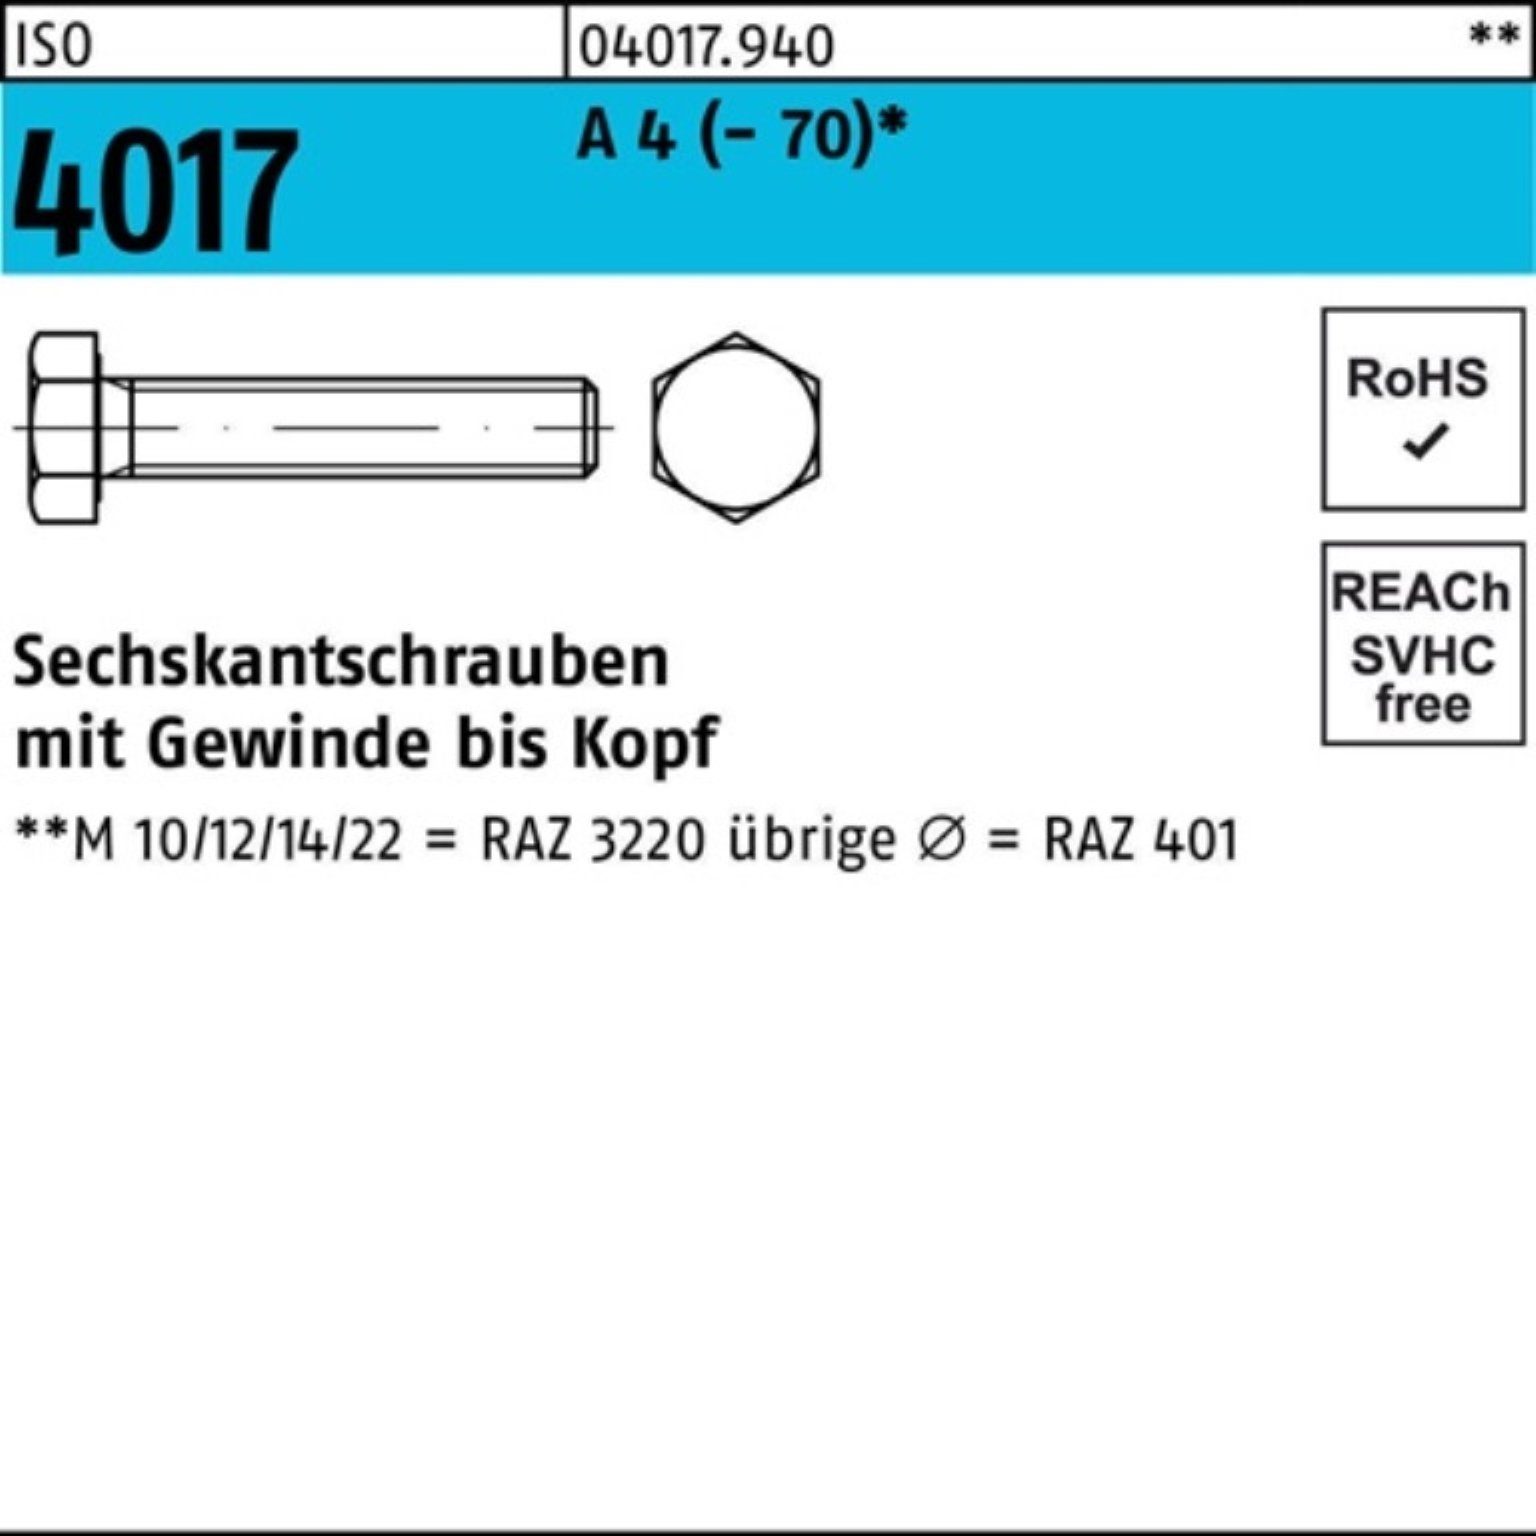 A Bufab (70) Sechskantschraube 100er 4 M10x Stück 140 1 Pack 4017 VG Sechskantschraube ISO